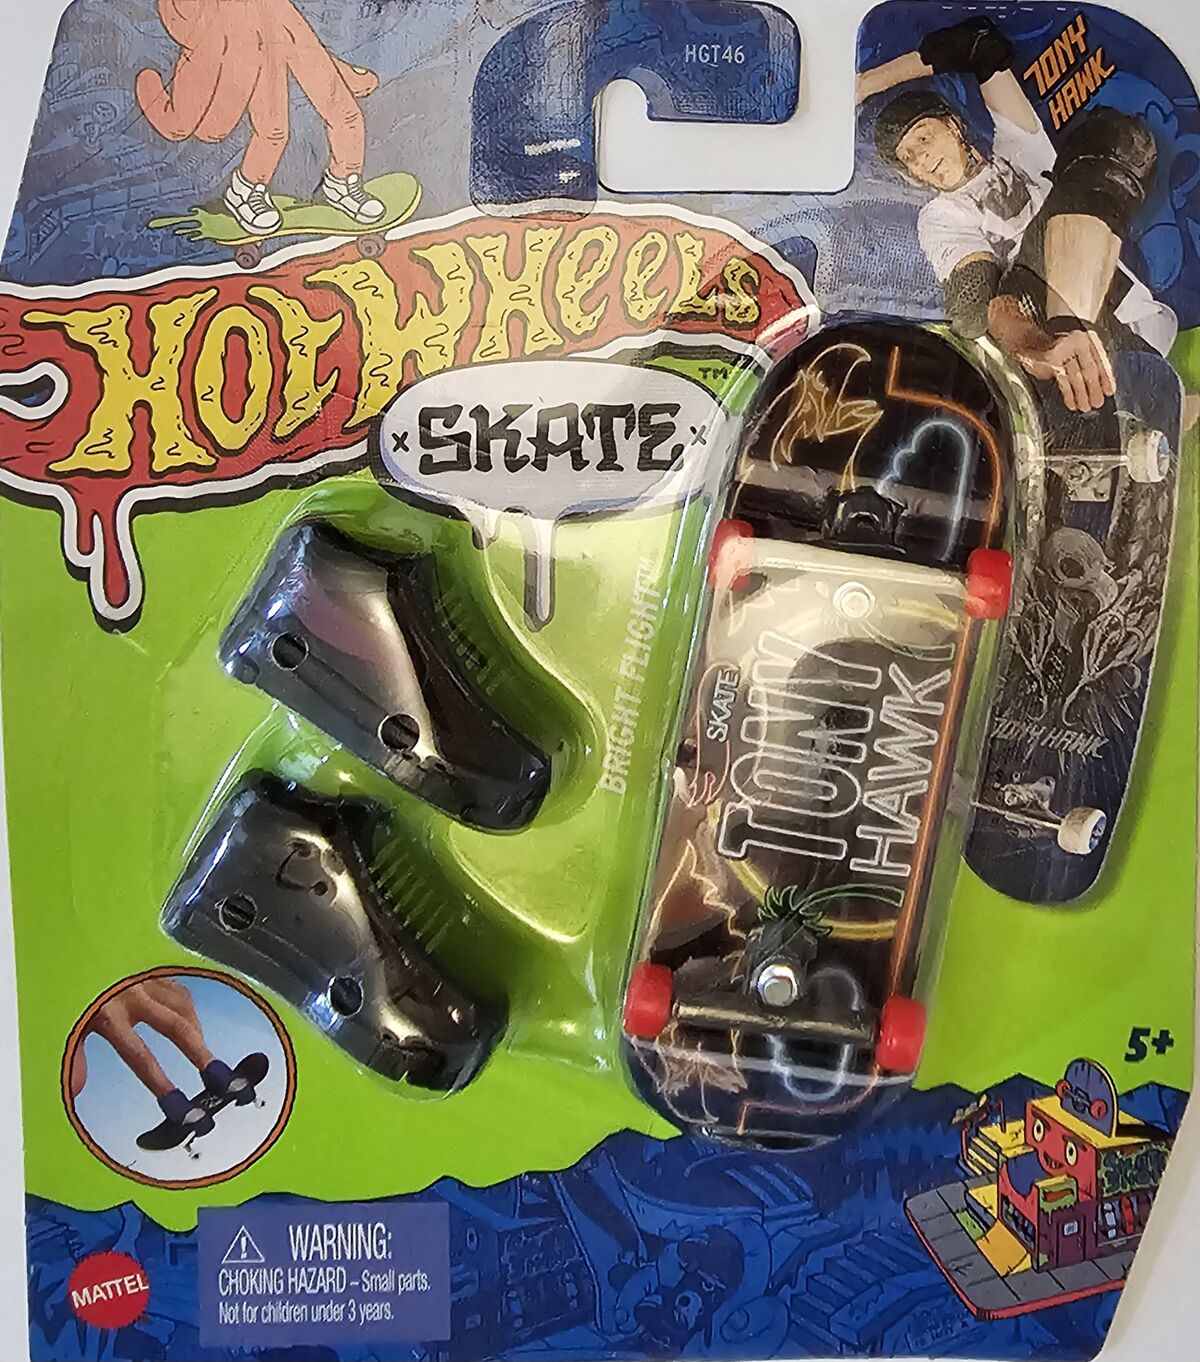 Skate De Dedo Hot Wheels Bright Flight Tony Hawk - Mattel